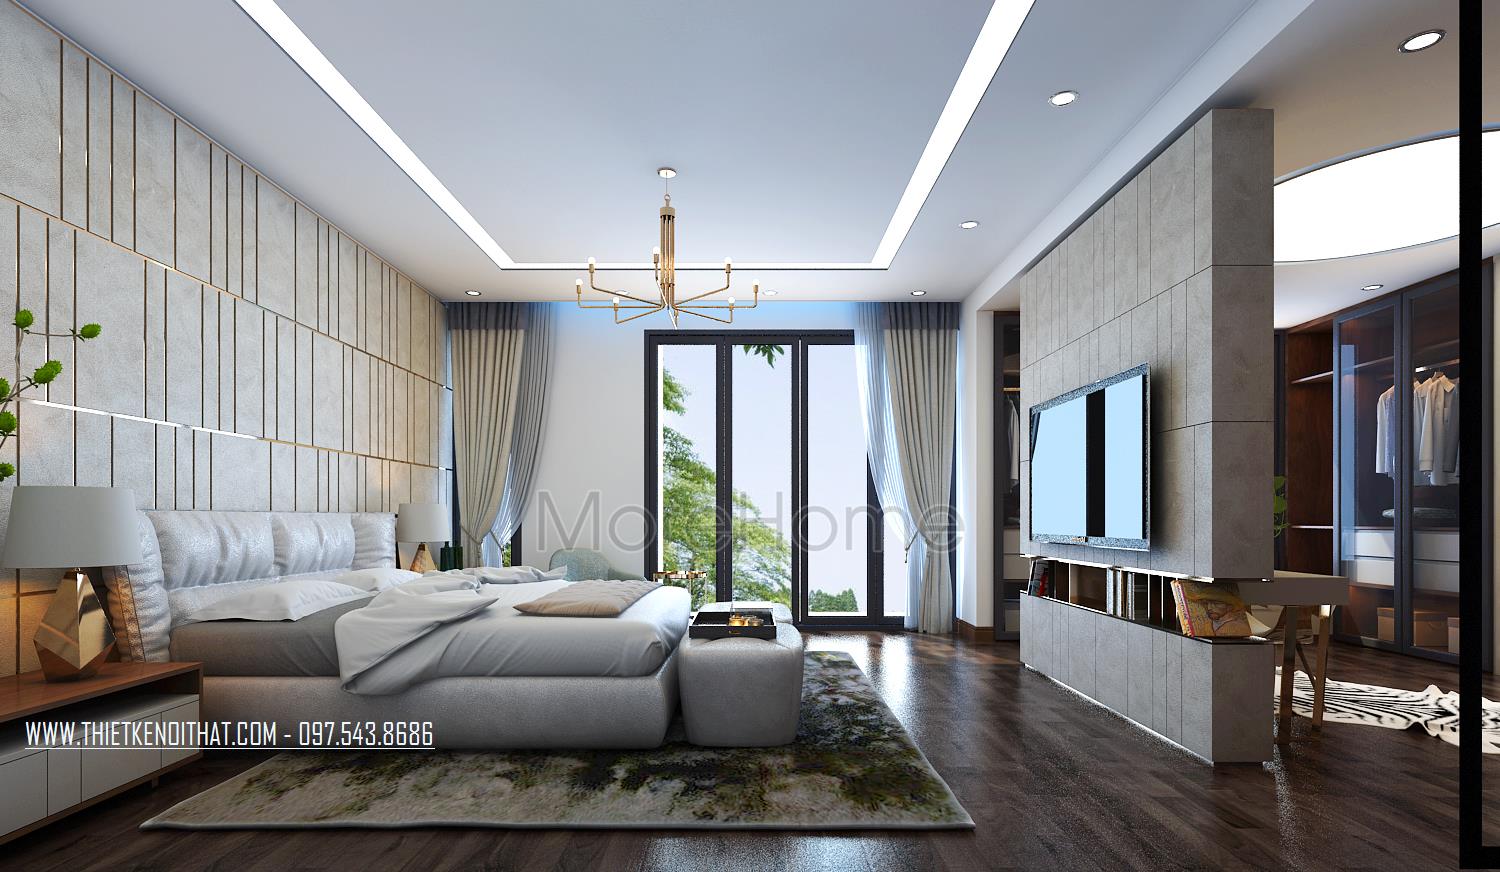 40 Mẫu thiết kế nội thất phòng ngủ biệt thự đẹp sang trọng 2023